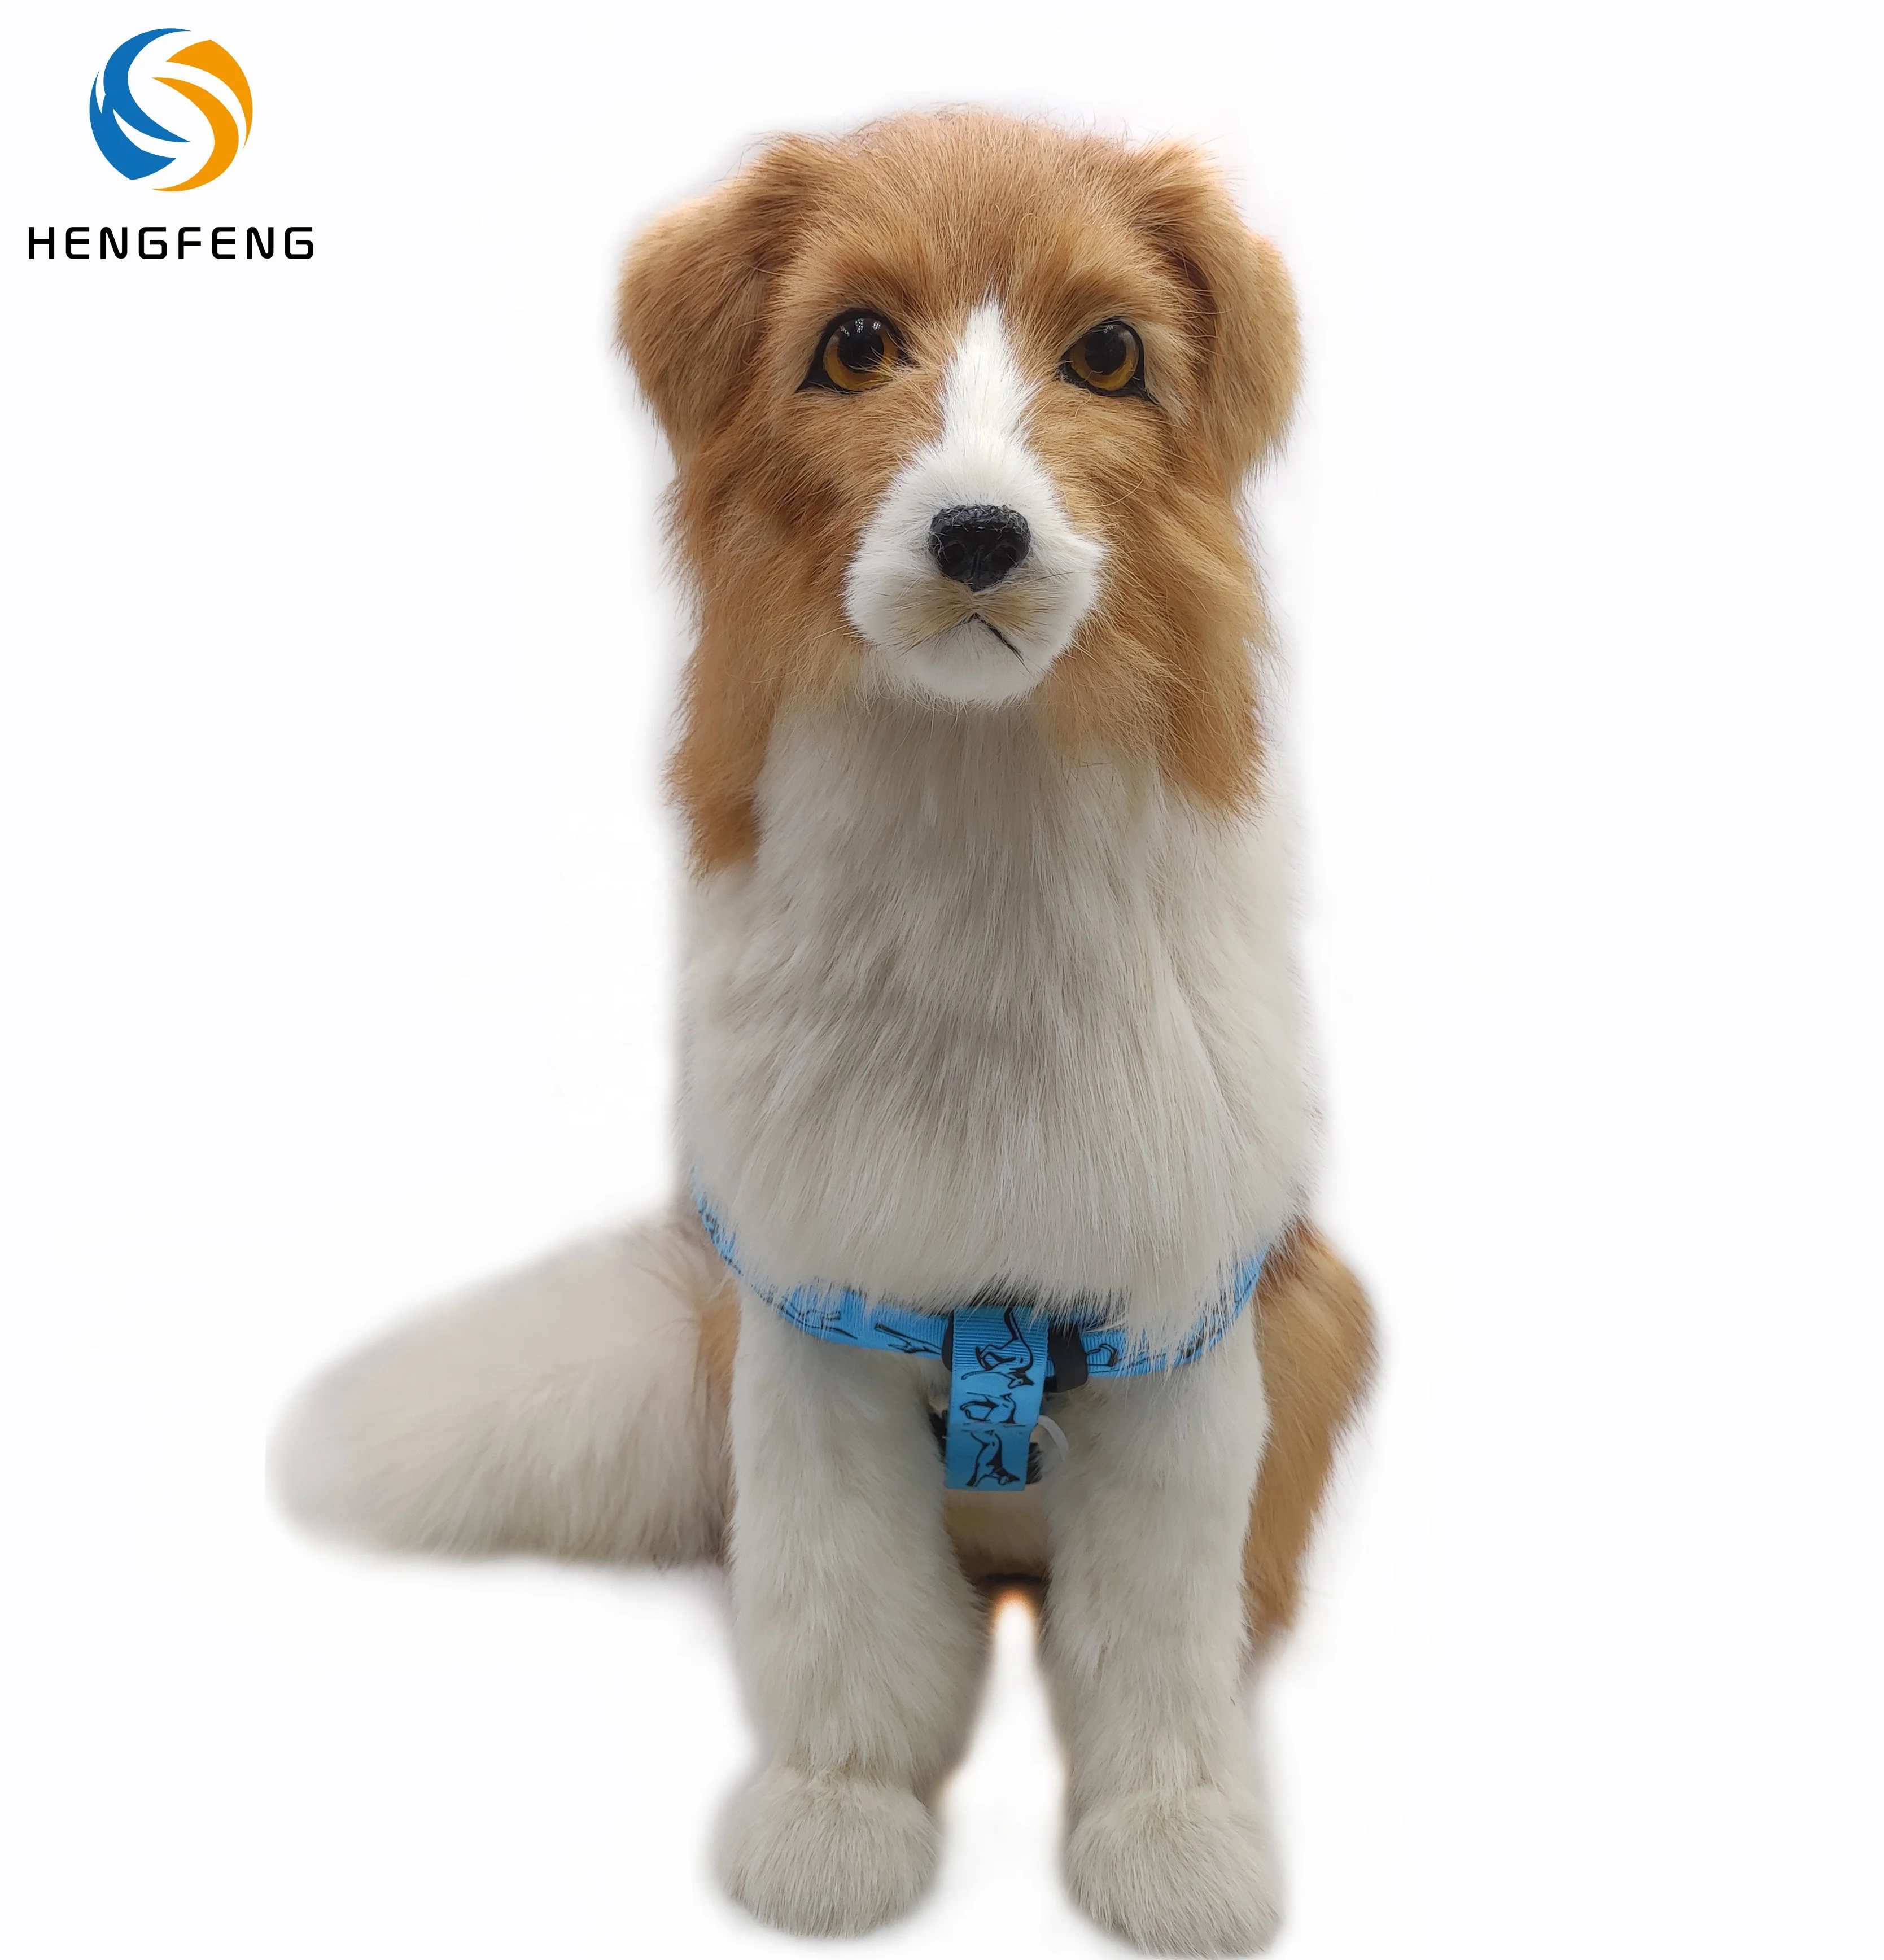 

LED Flashing Safety Dog Harness Nylon Light Up Glow Flashing Led Pet Dog Harness Vest, Picture shows or custom